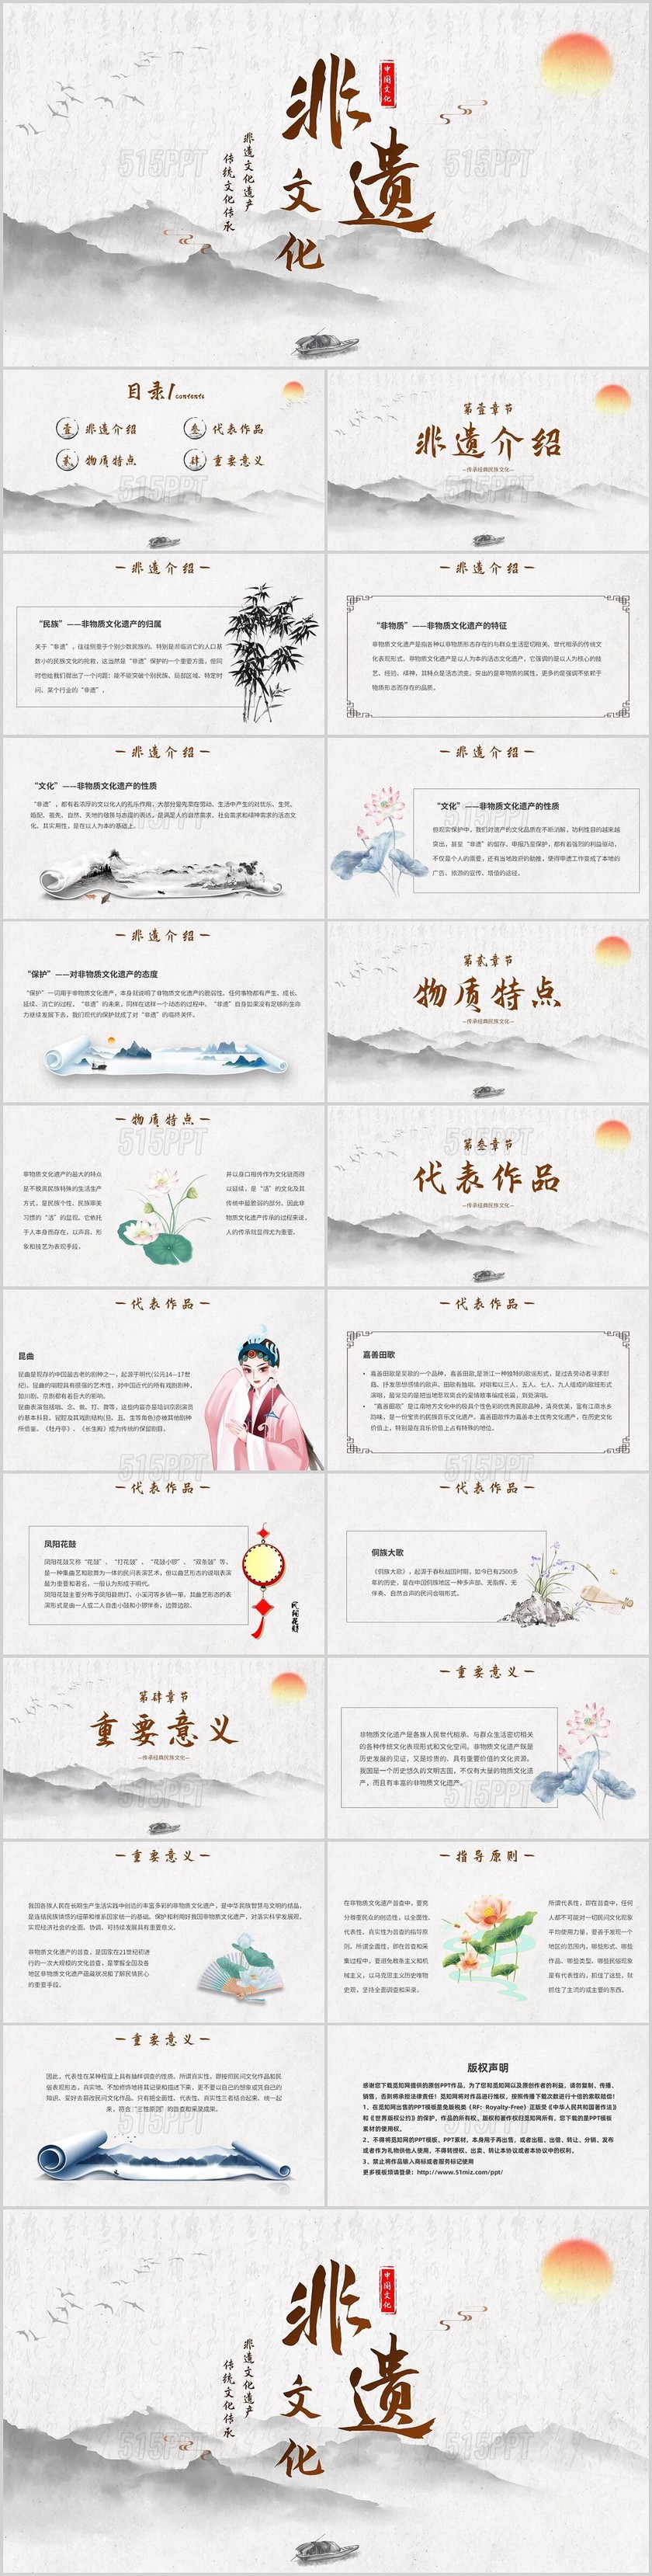 米色手绘中国风水墨画非遗文化传统文化传承主题PPT模板中国传统文化